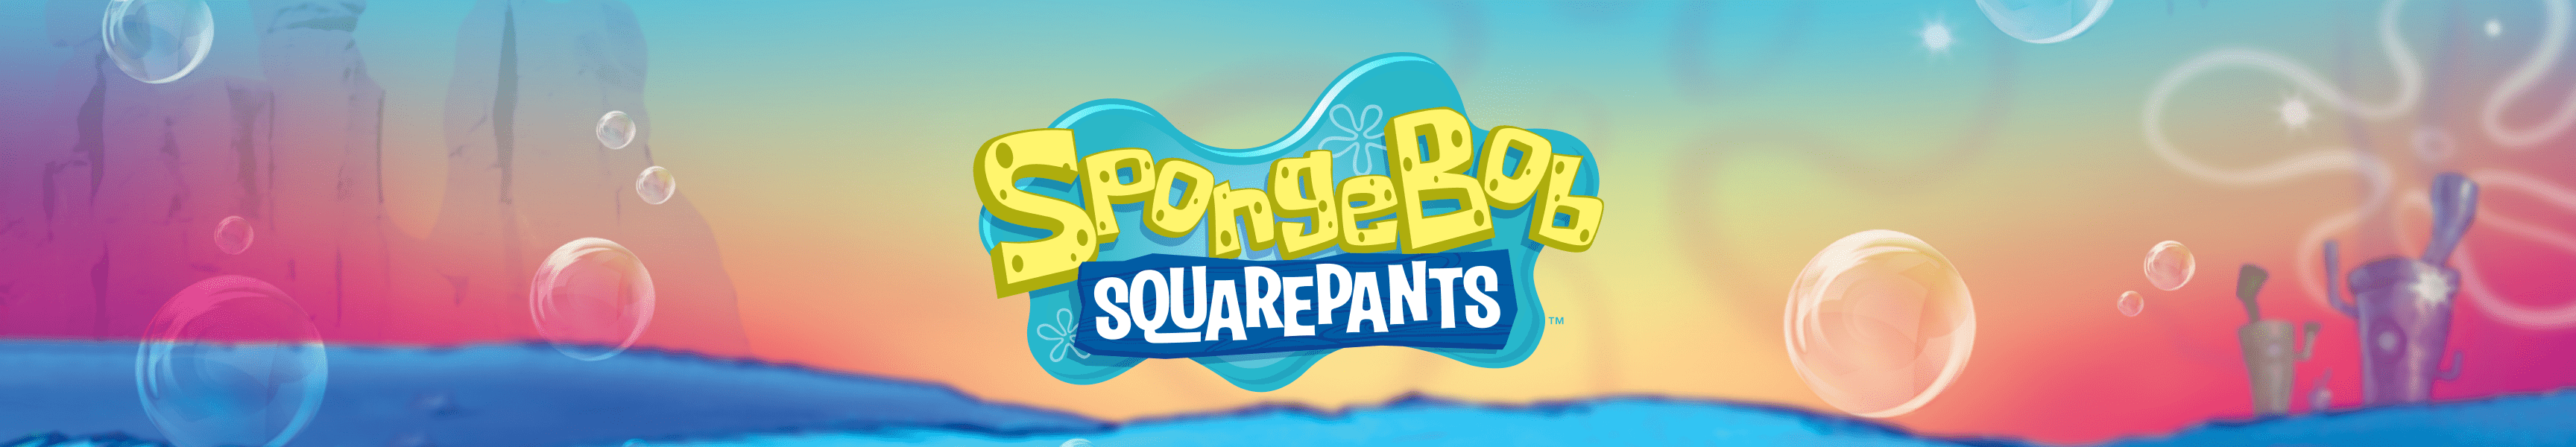 SpongeBob SquarePants Last Chance Gifts